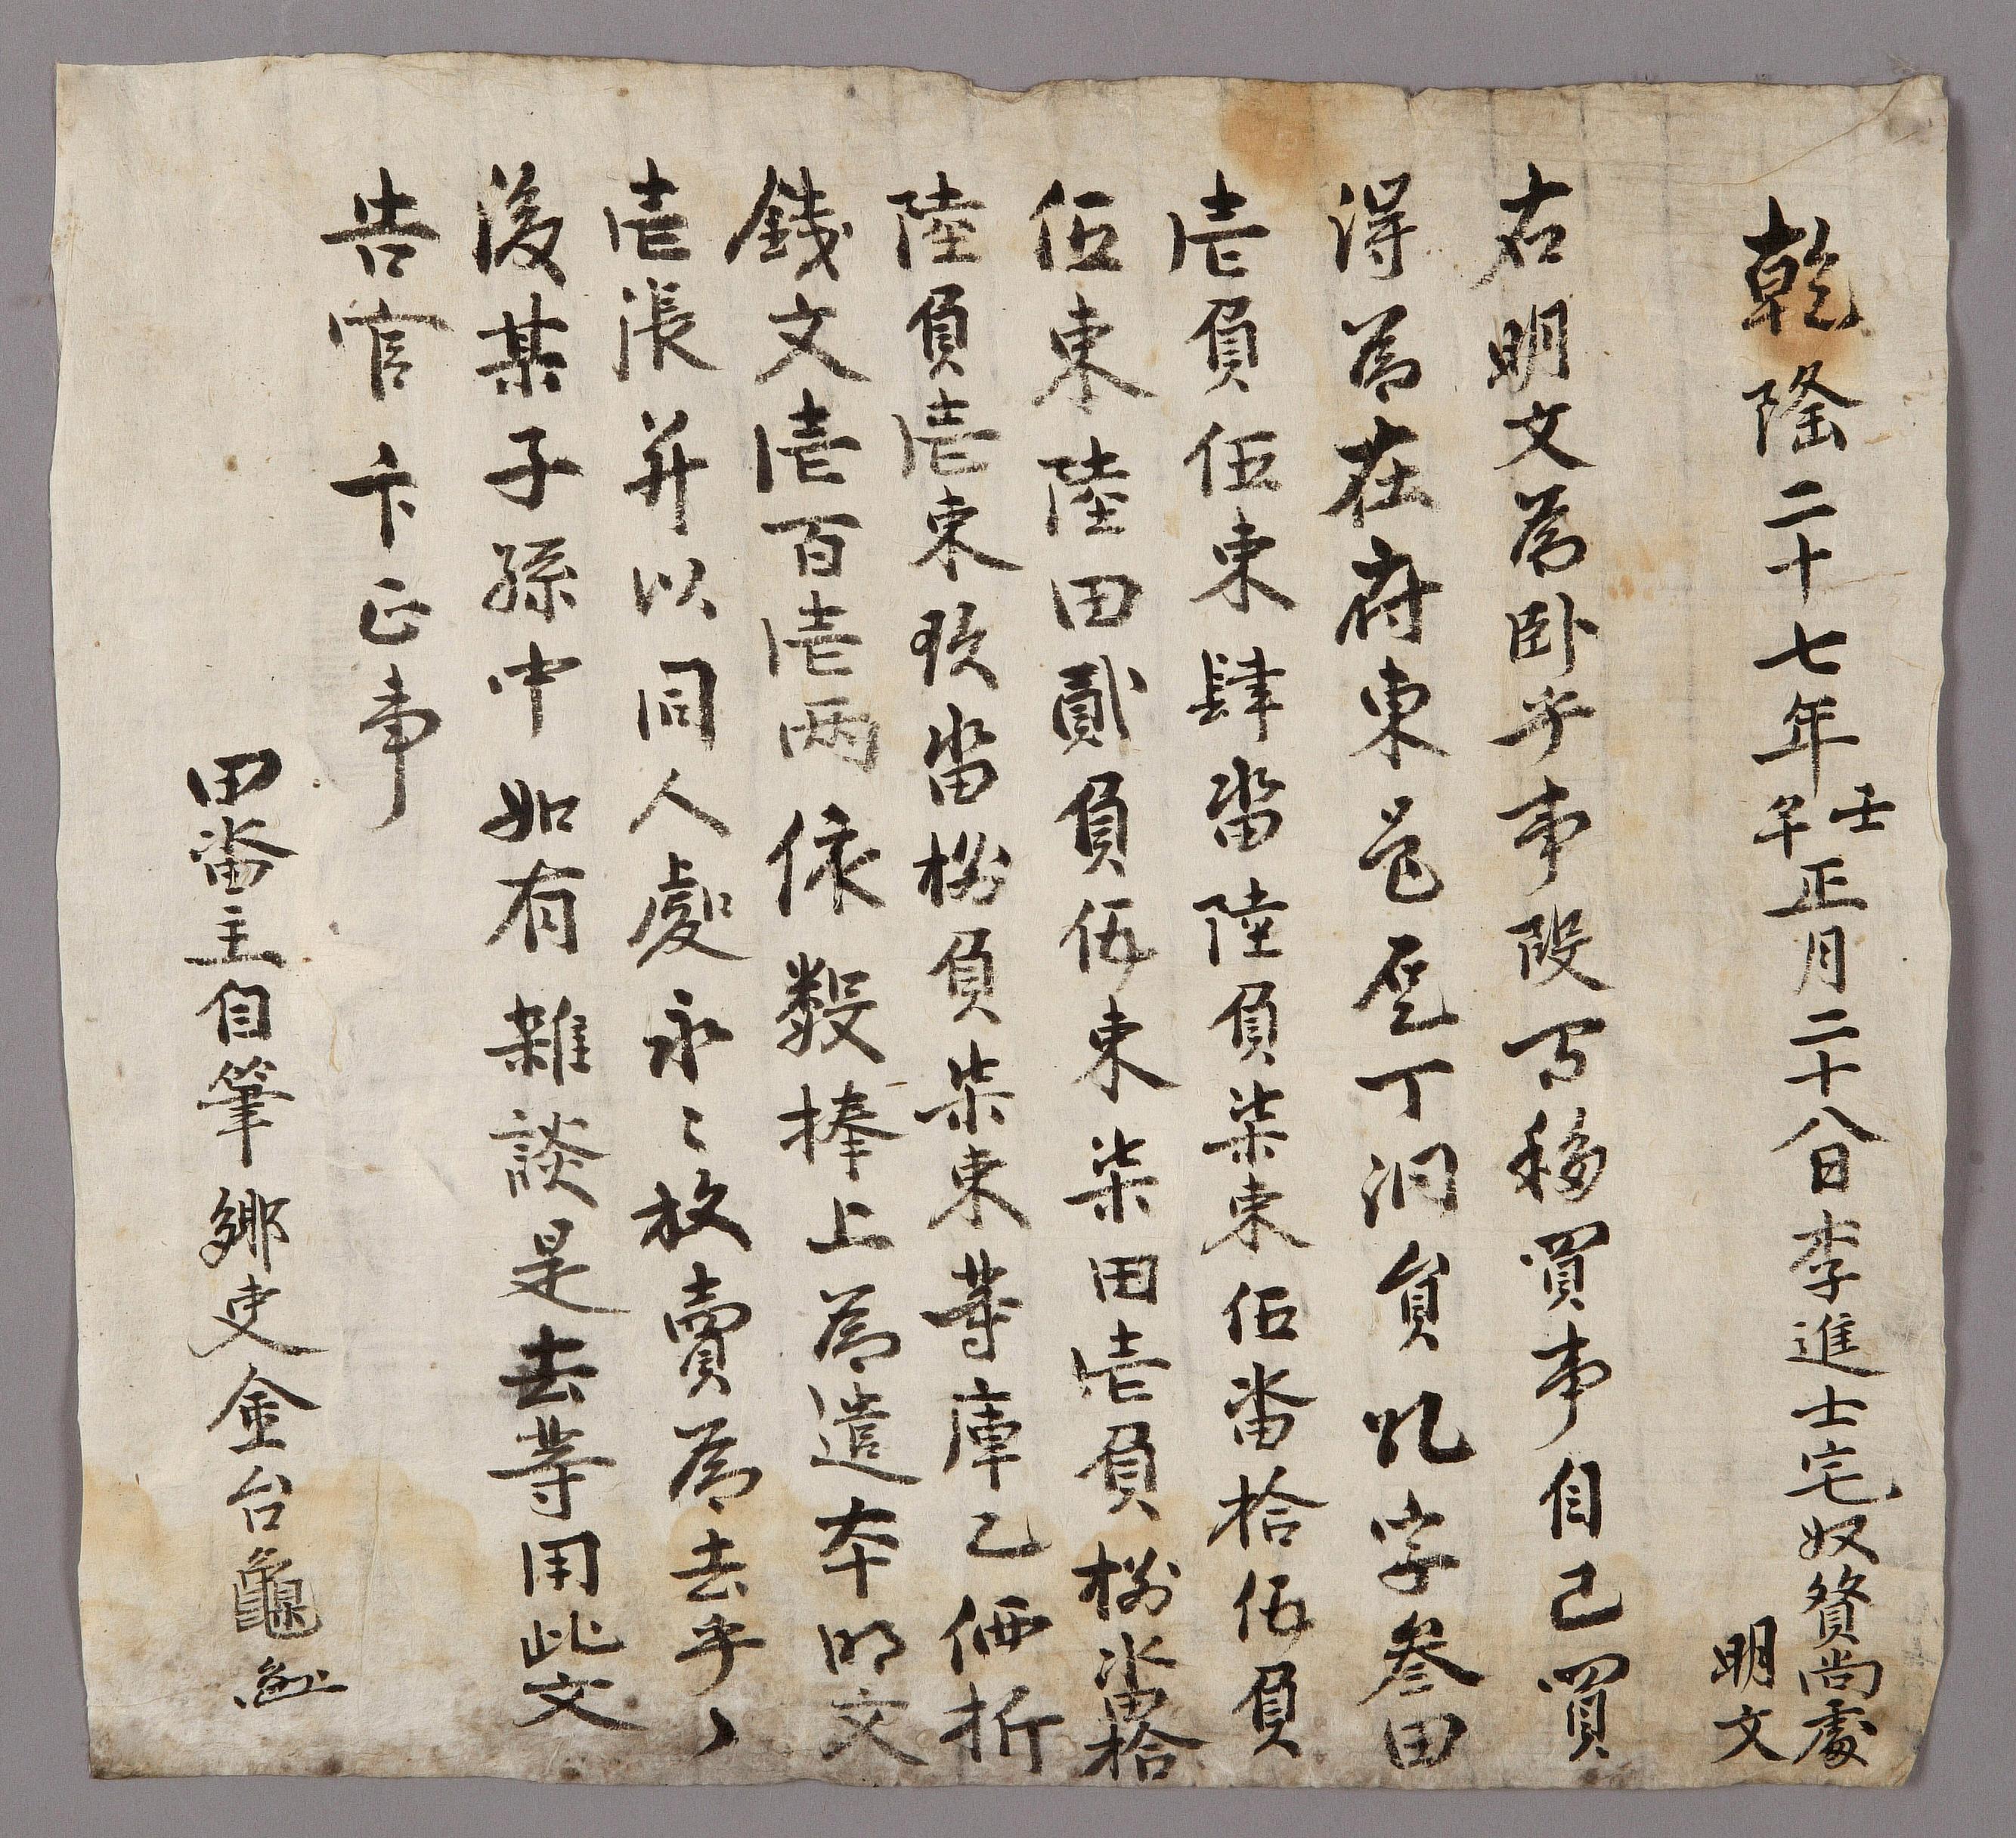 향리(鄕吏) 김태구(金台龜)가 1762년에 작성한 전답 방매문기